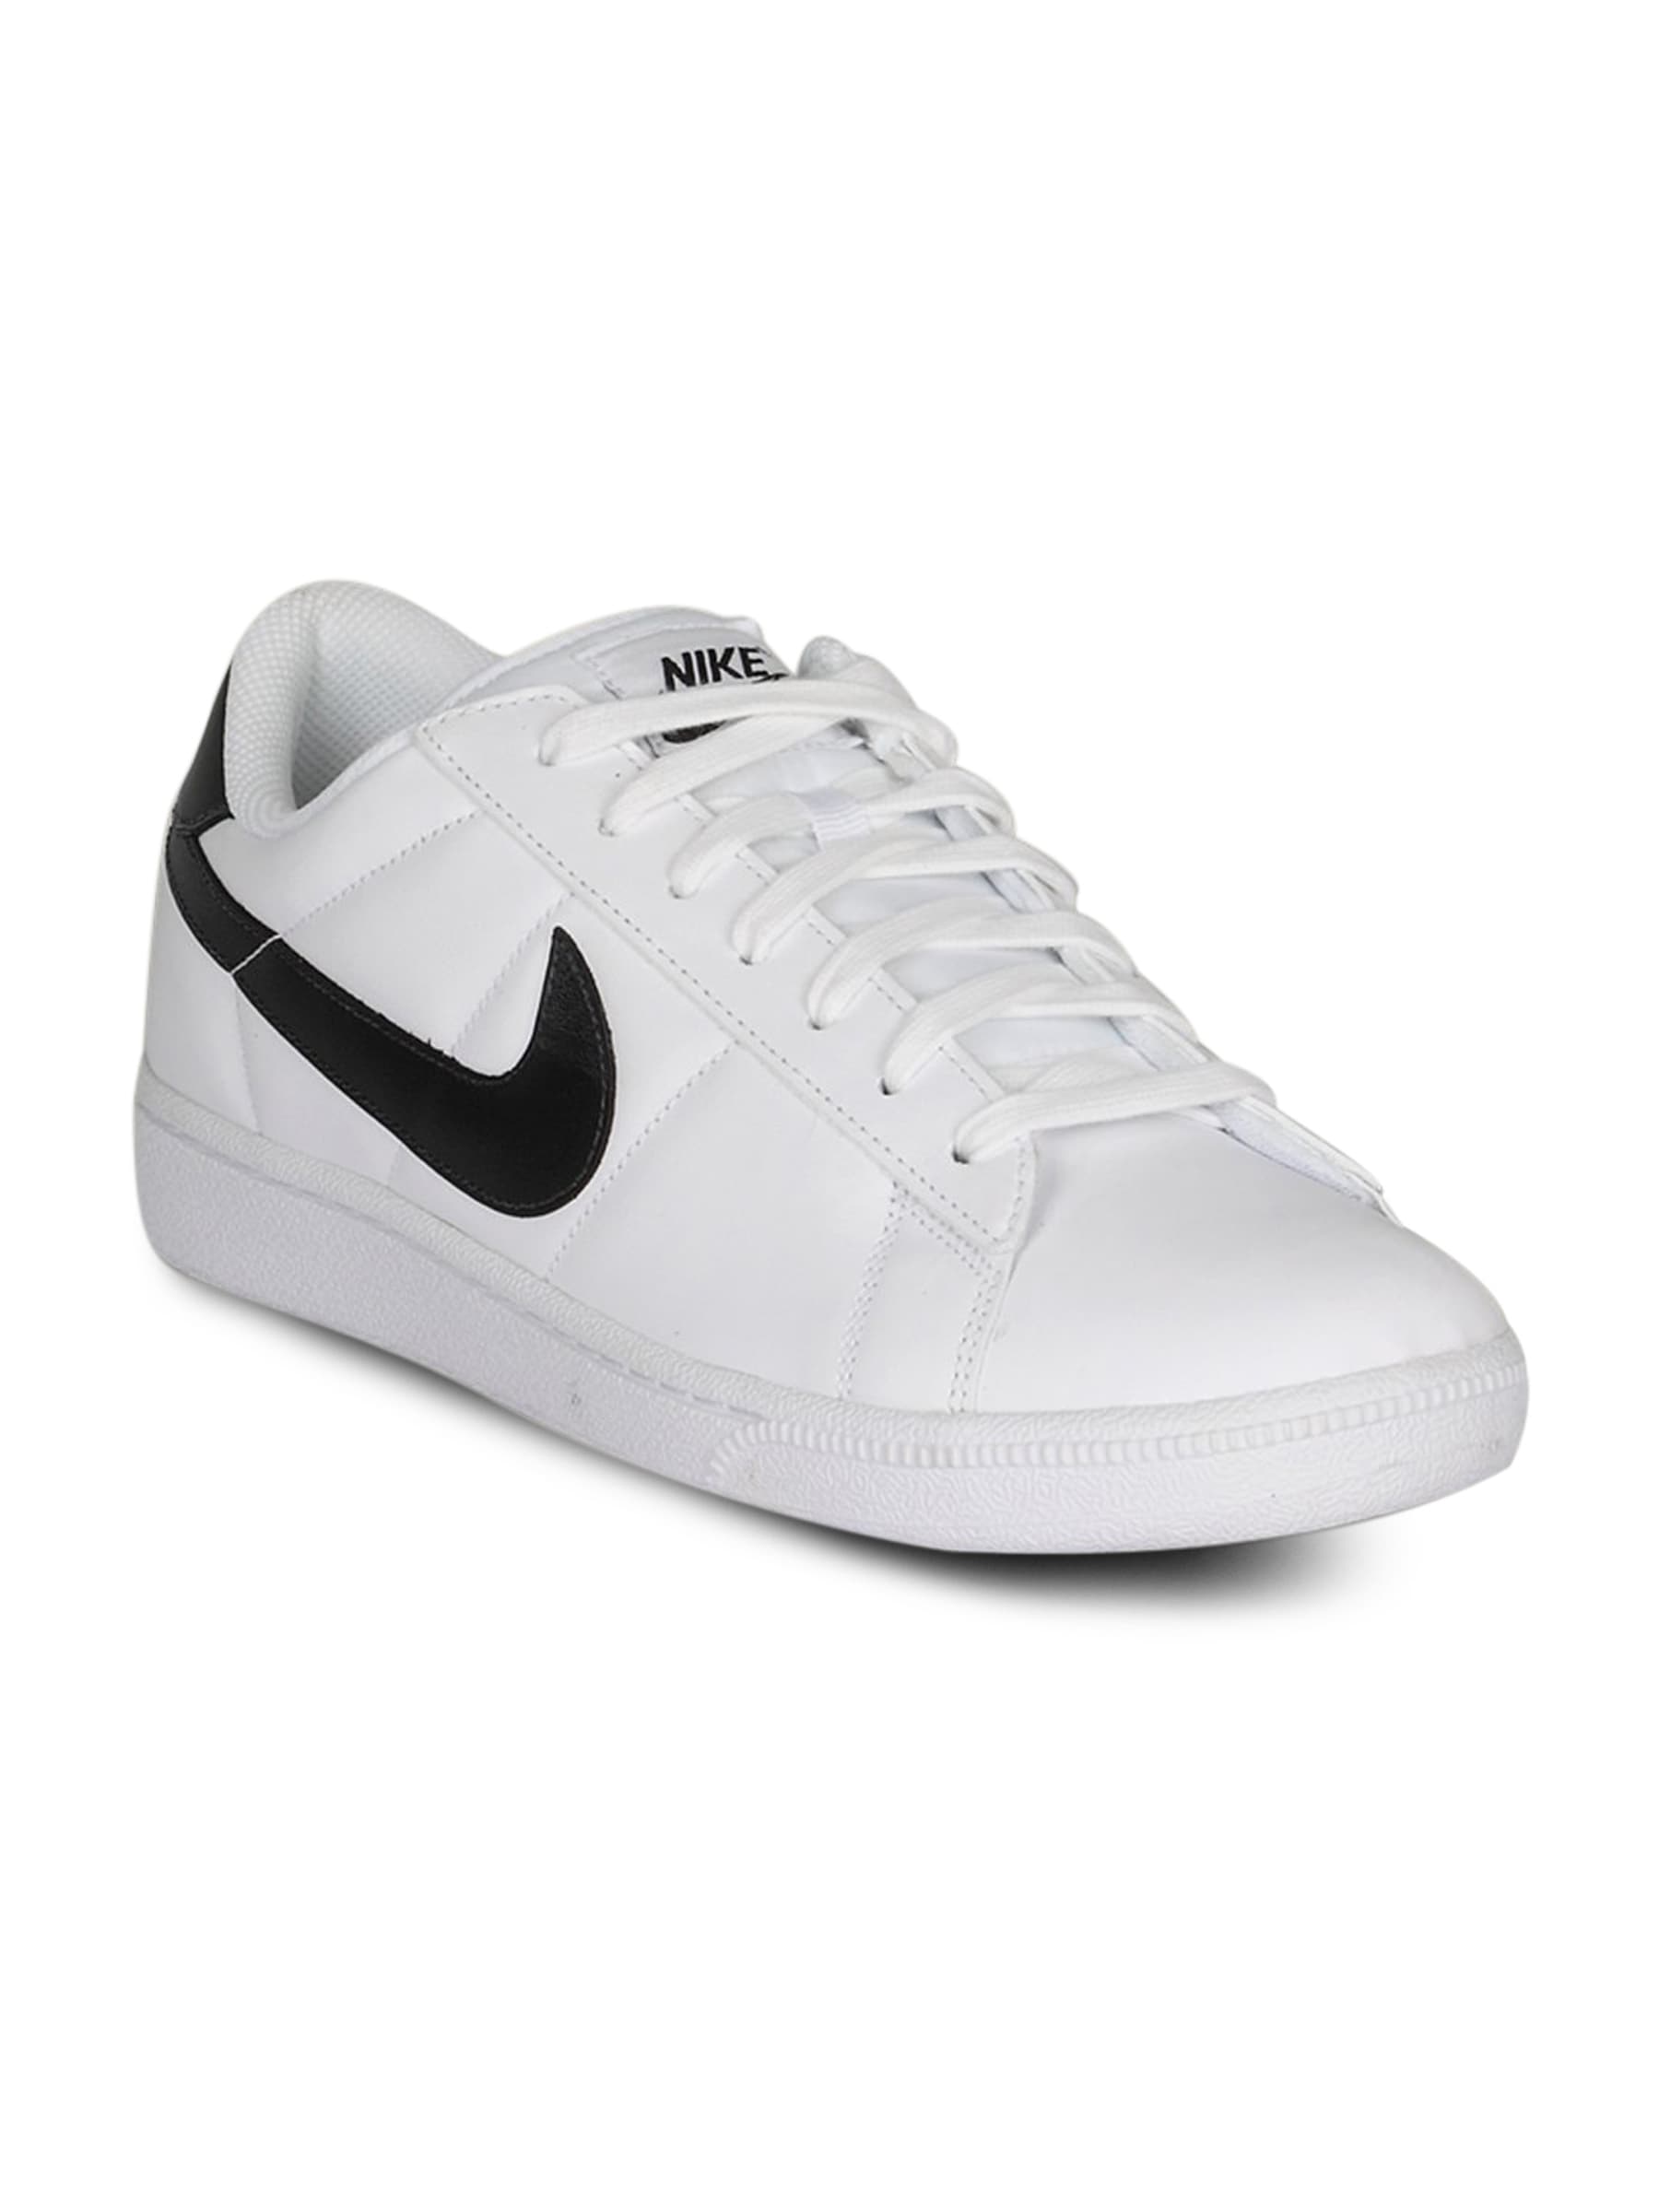 Nike Men's Tennis Classic White Black Shoe